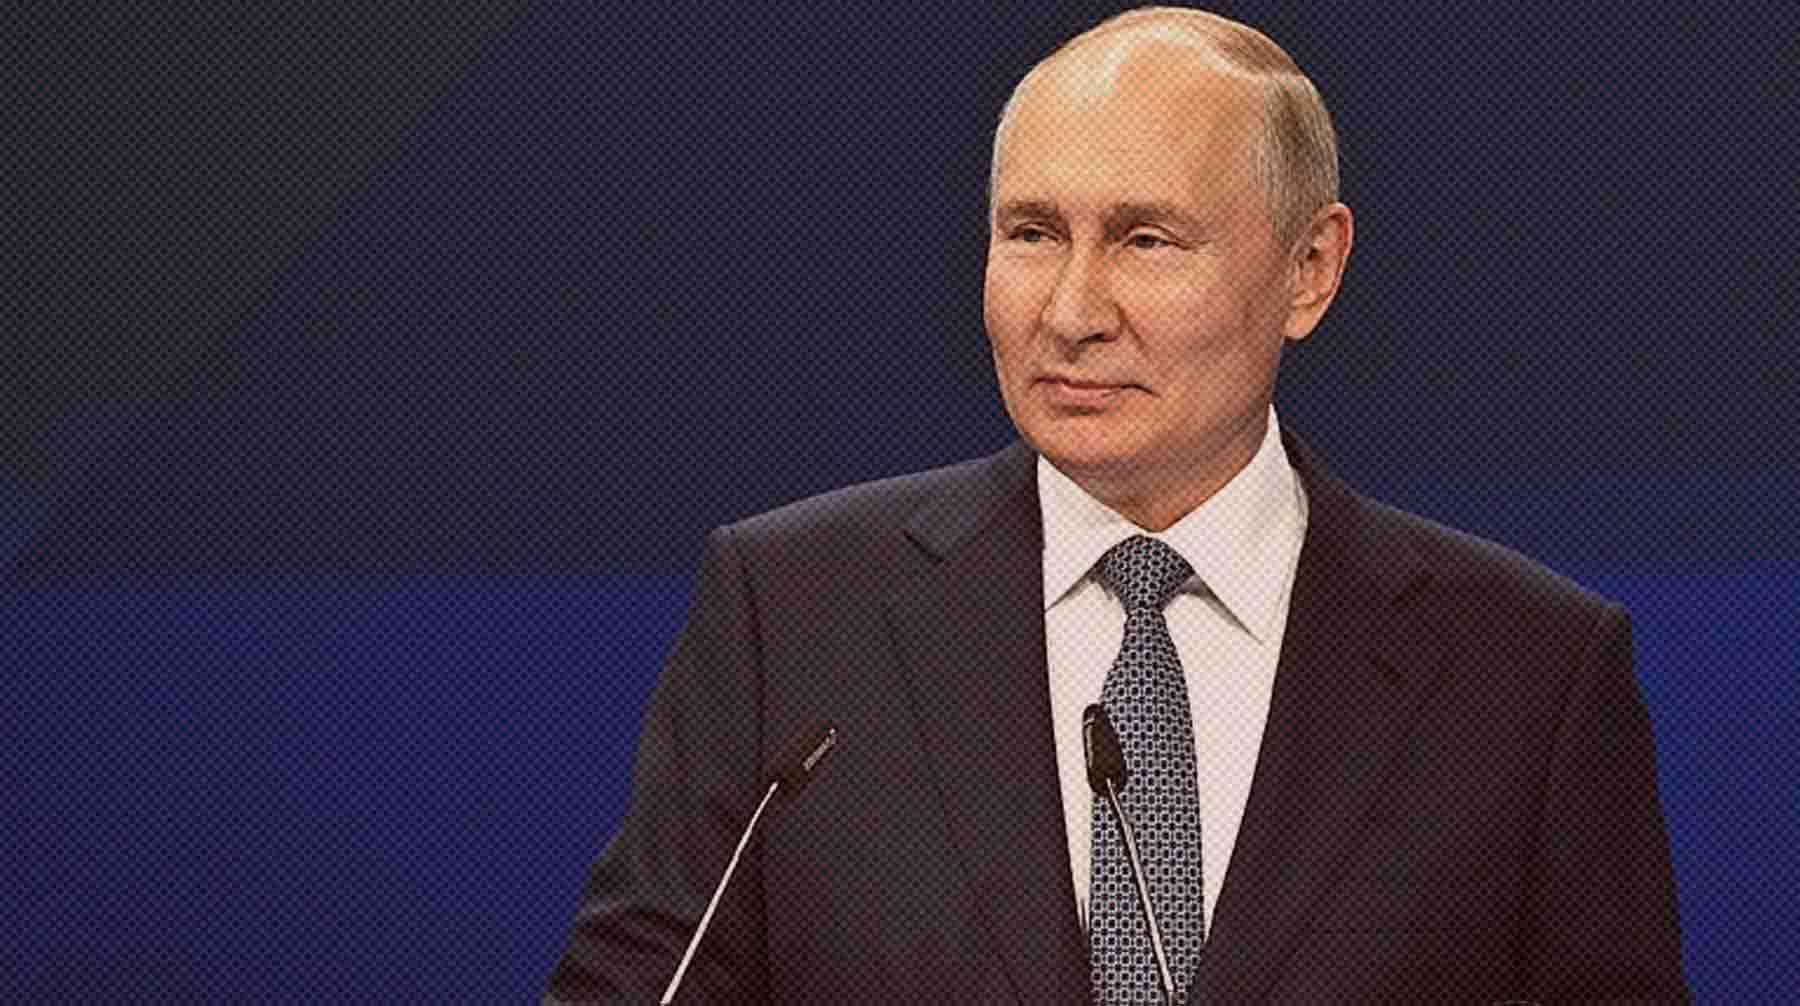 Dailystorm - Группа избирателей поддержала самовыдвижение Путина на выборах президента в 2024 году